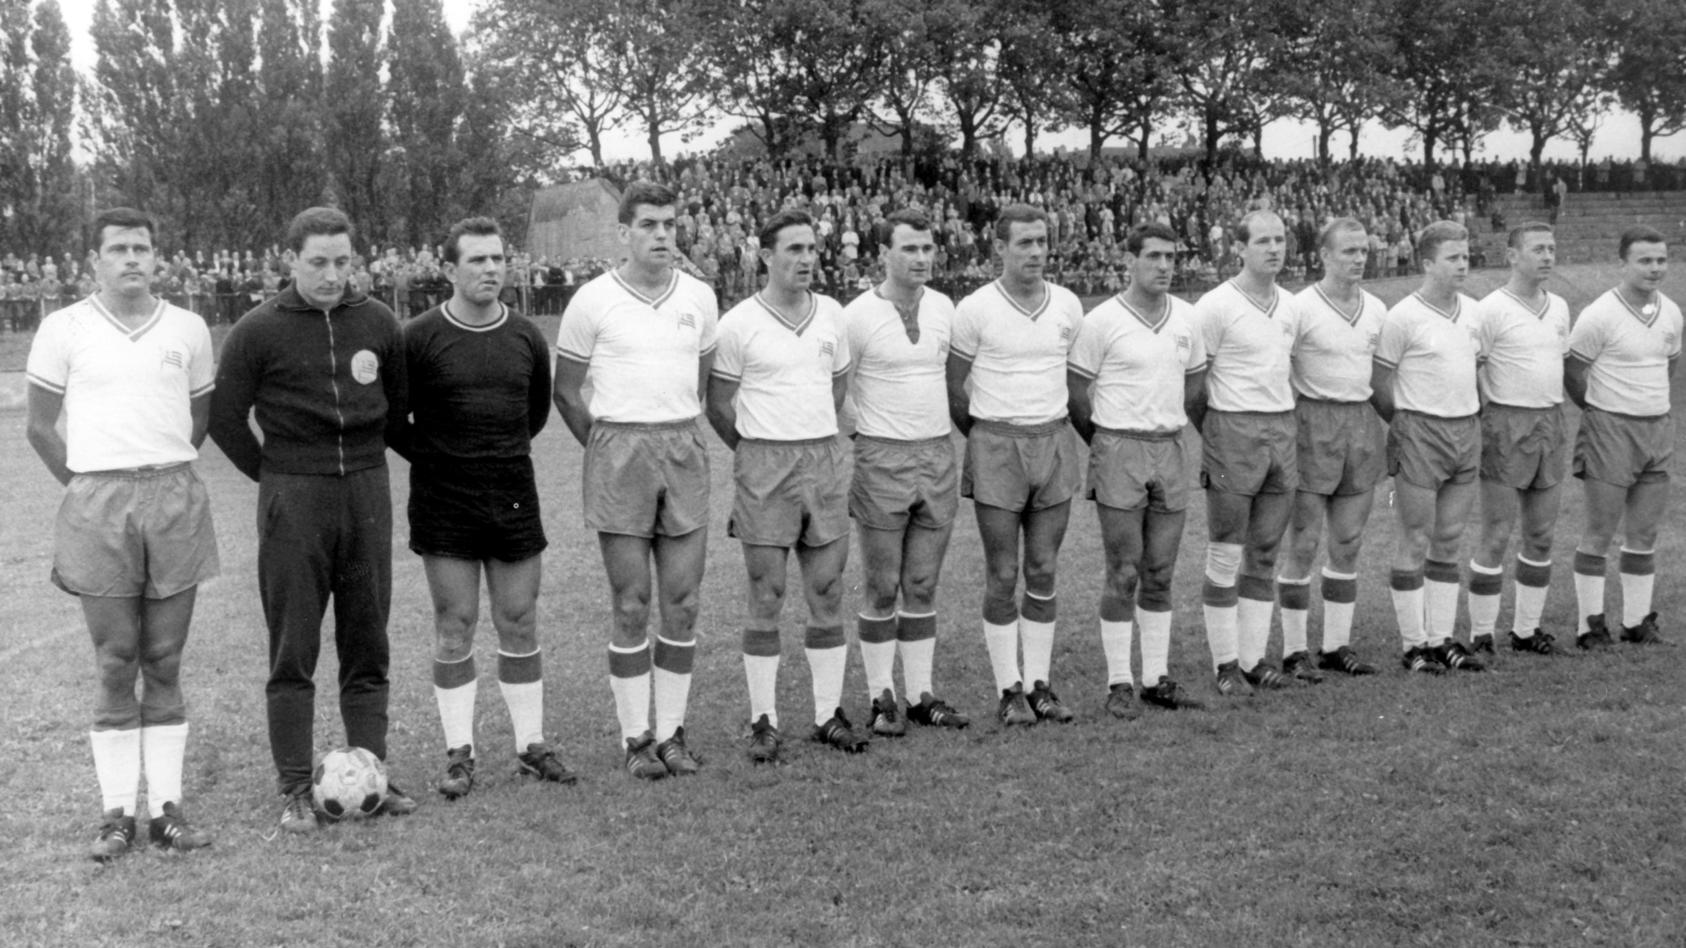 Die Mannschaft des neuen Fußball-Bundesligisten Tasmania 1900 nimmt am 31.07.1965 in Berlin Aufstellung zu einem Freundschaftsspiel gegen den Schweizer Ligaklub FC Winterthur. Tasmania wird auf Beschluss des Deutschen Fußballbundes in die aufgestockt